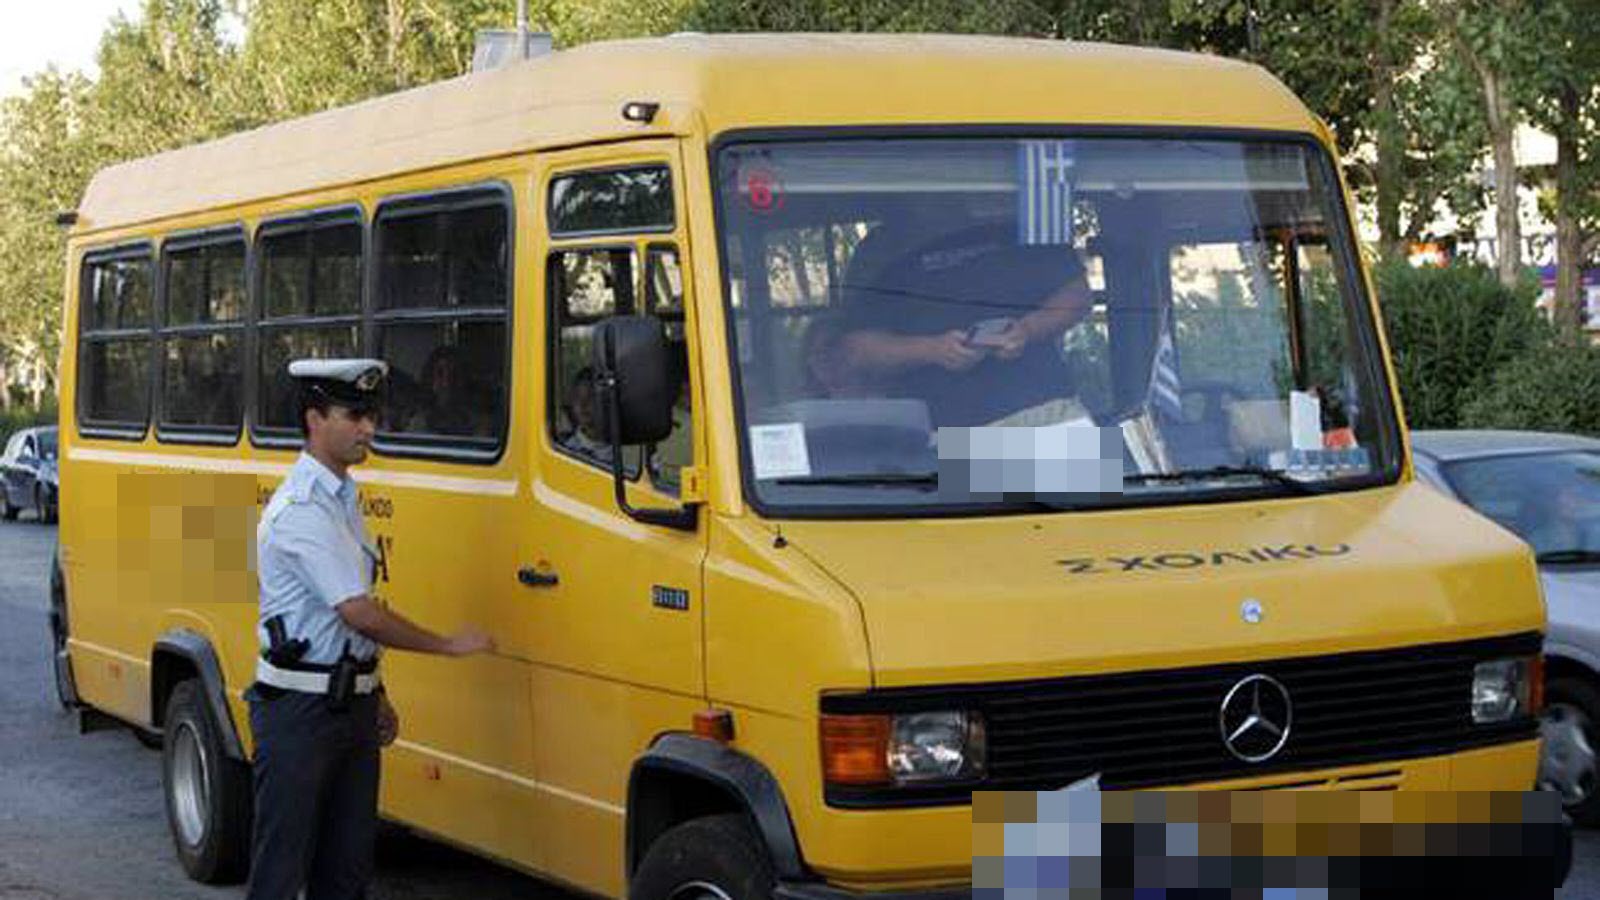 Πάνω από 200 παραβάσεις βεβαιώθηκαν σε 1696 ελέγχους της Τροχαίας σε σχολικά λεωφορεία σε όλη την χώρα